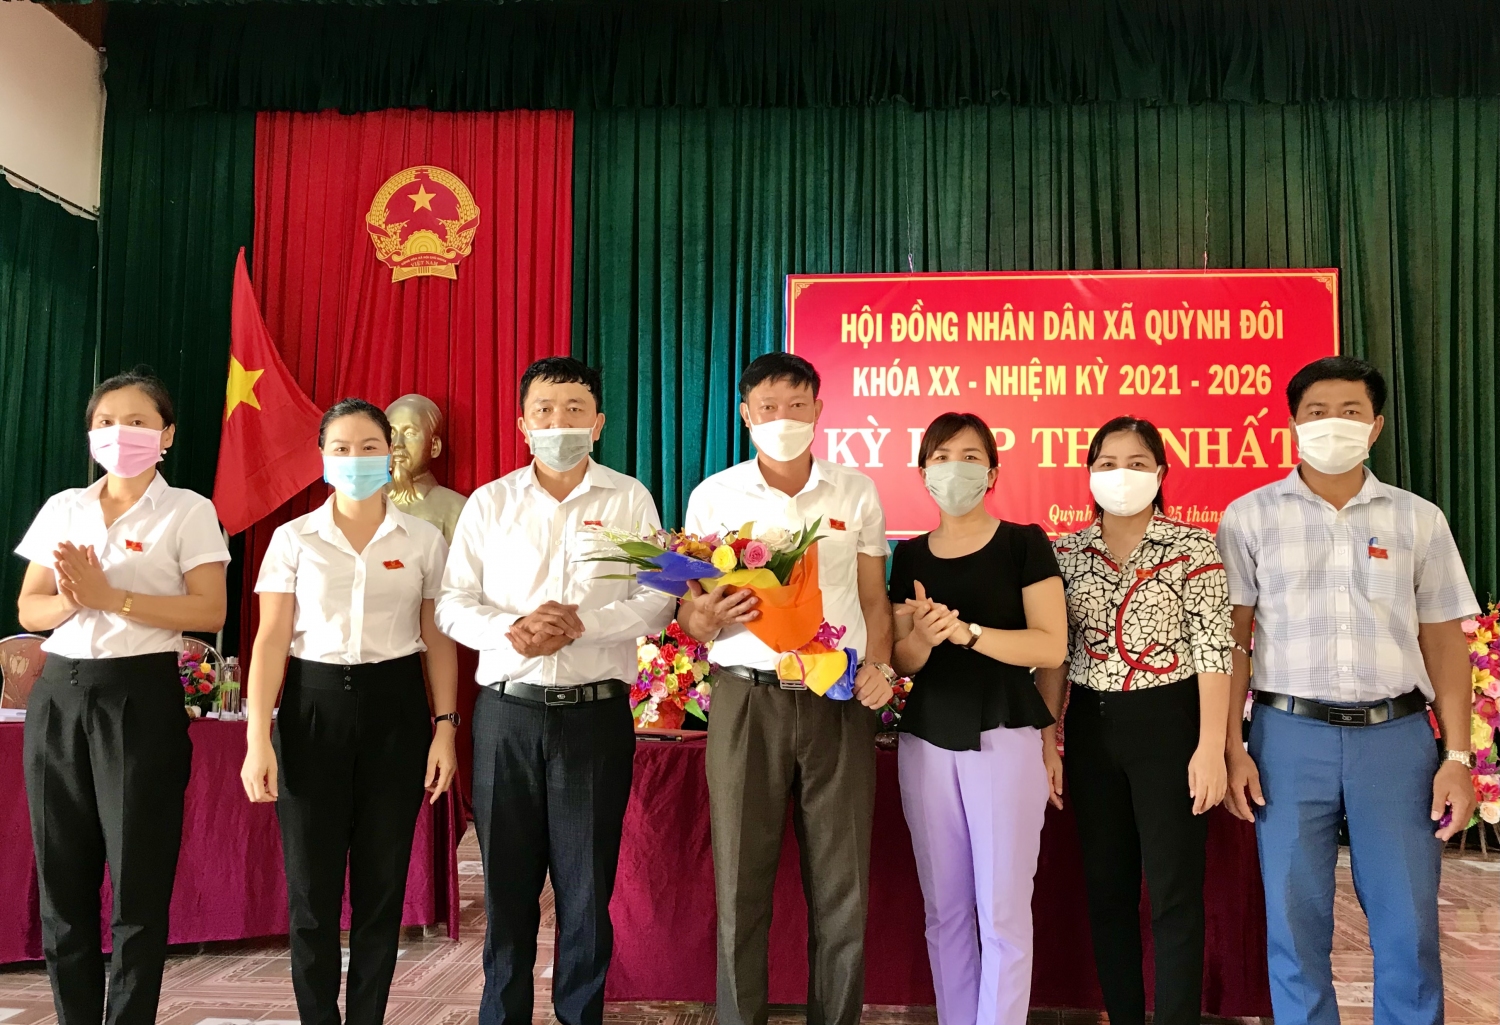 Bà Hồ Thị Duyên tặng hoa chúc mừng các ông, bà trúng vào các chức danh HĐND xã khoá XX